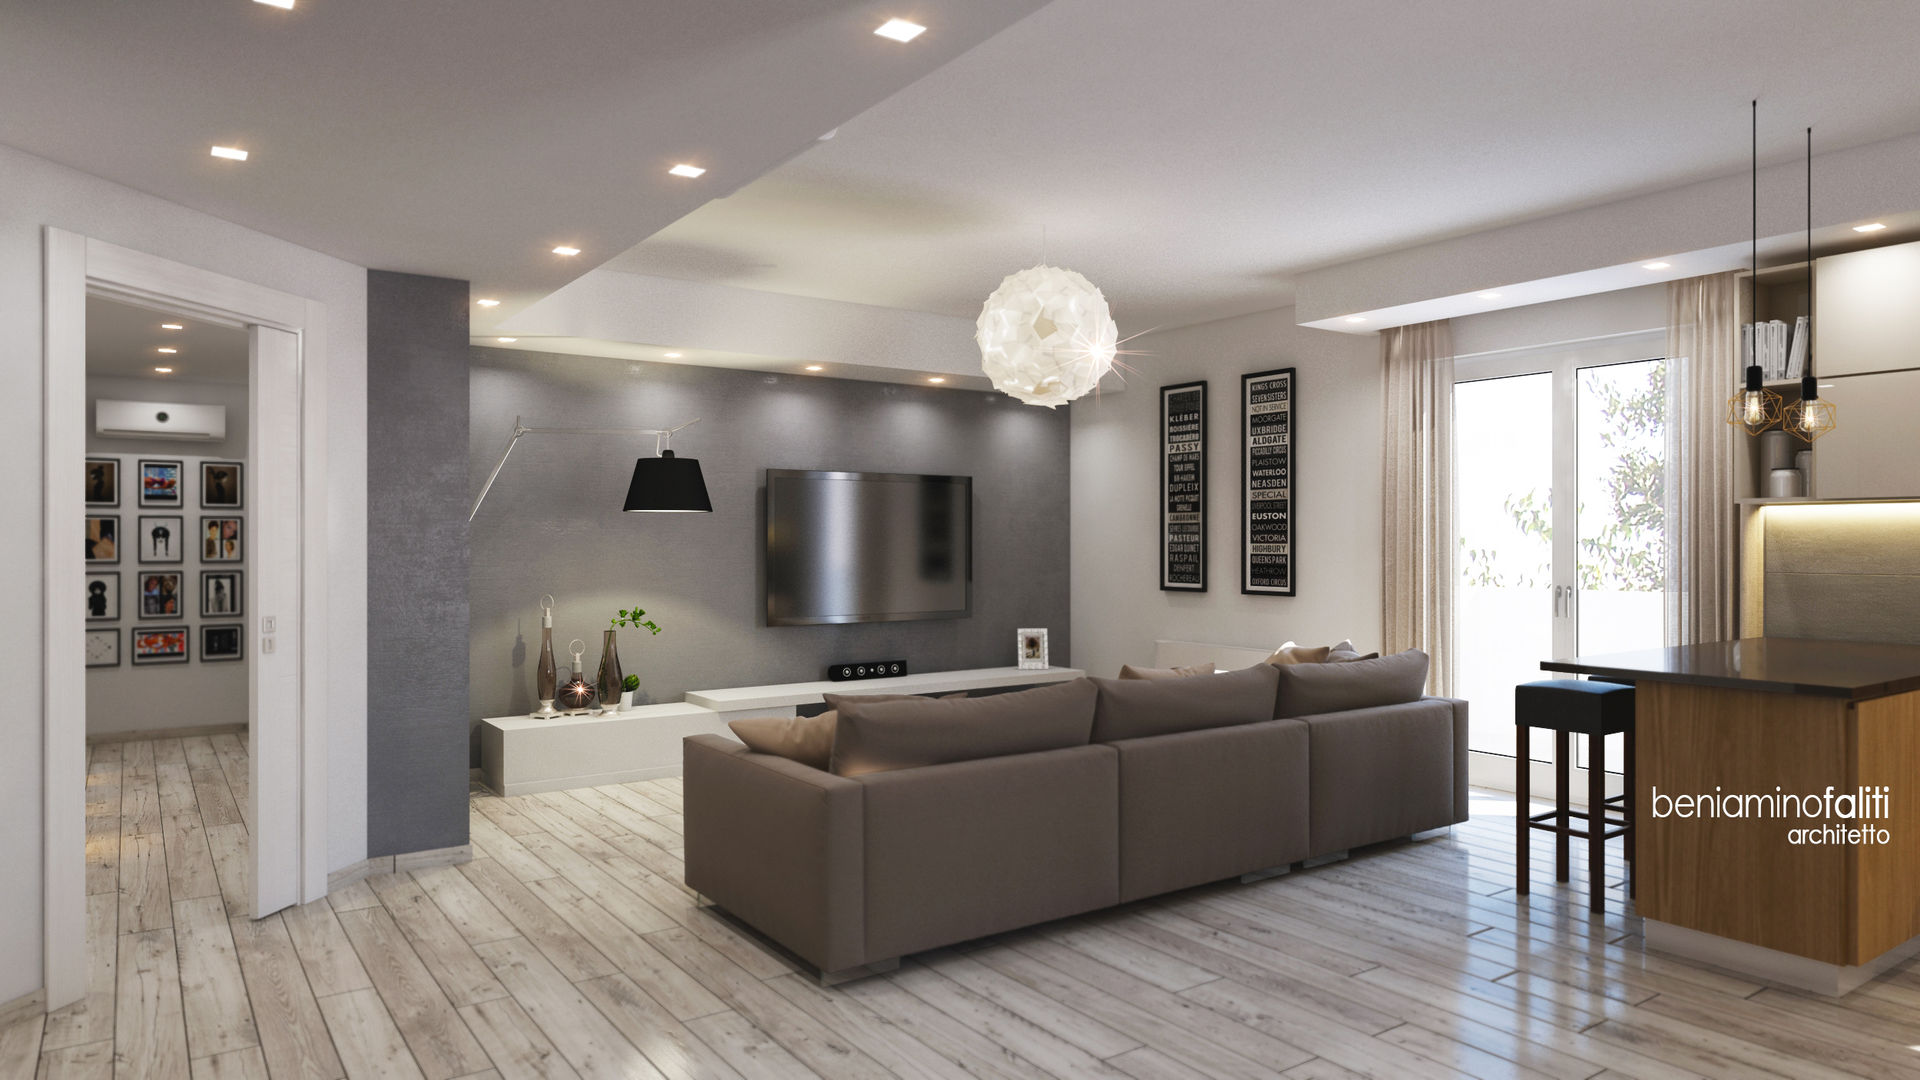 Ristrutturazione appartamento con linee moderne , Beniamino Faliti Architetto Beniamino Faliti Architetto Modern living room